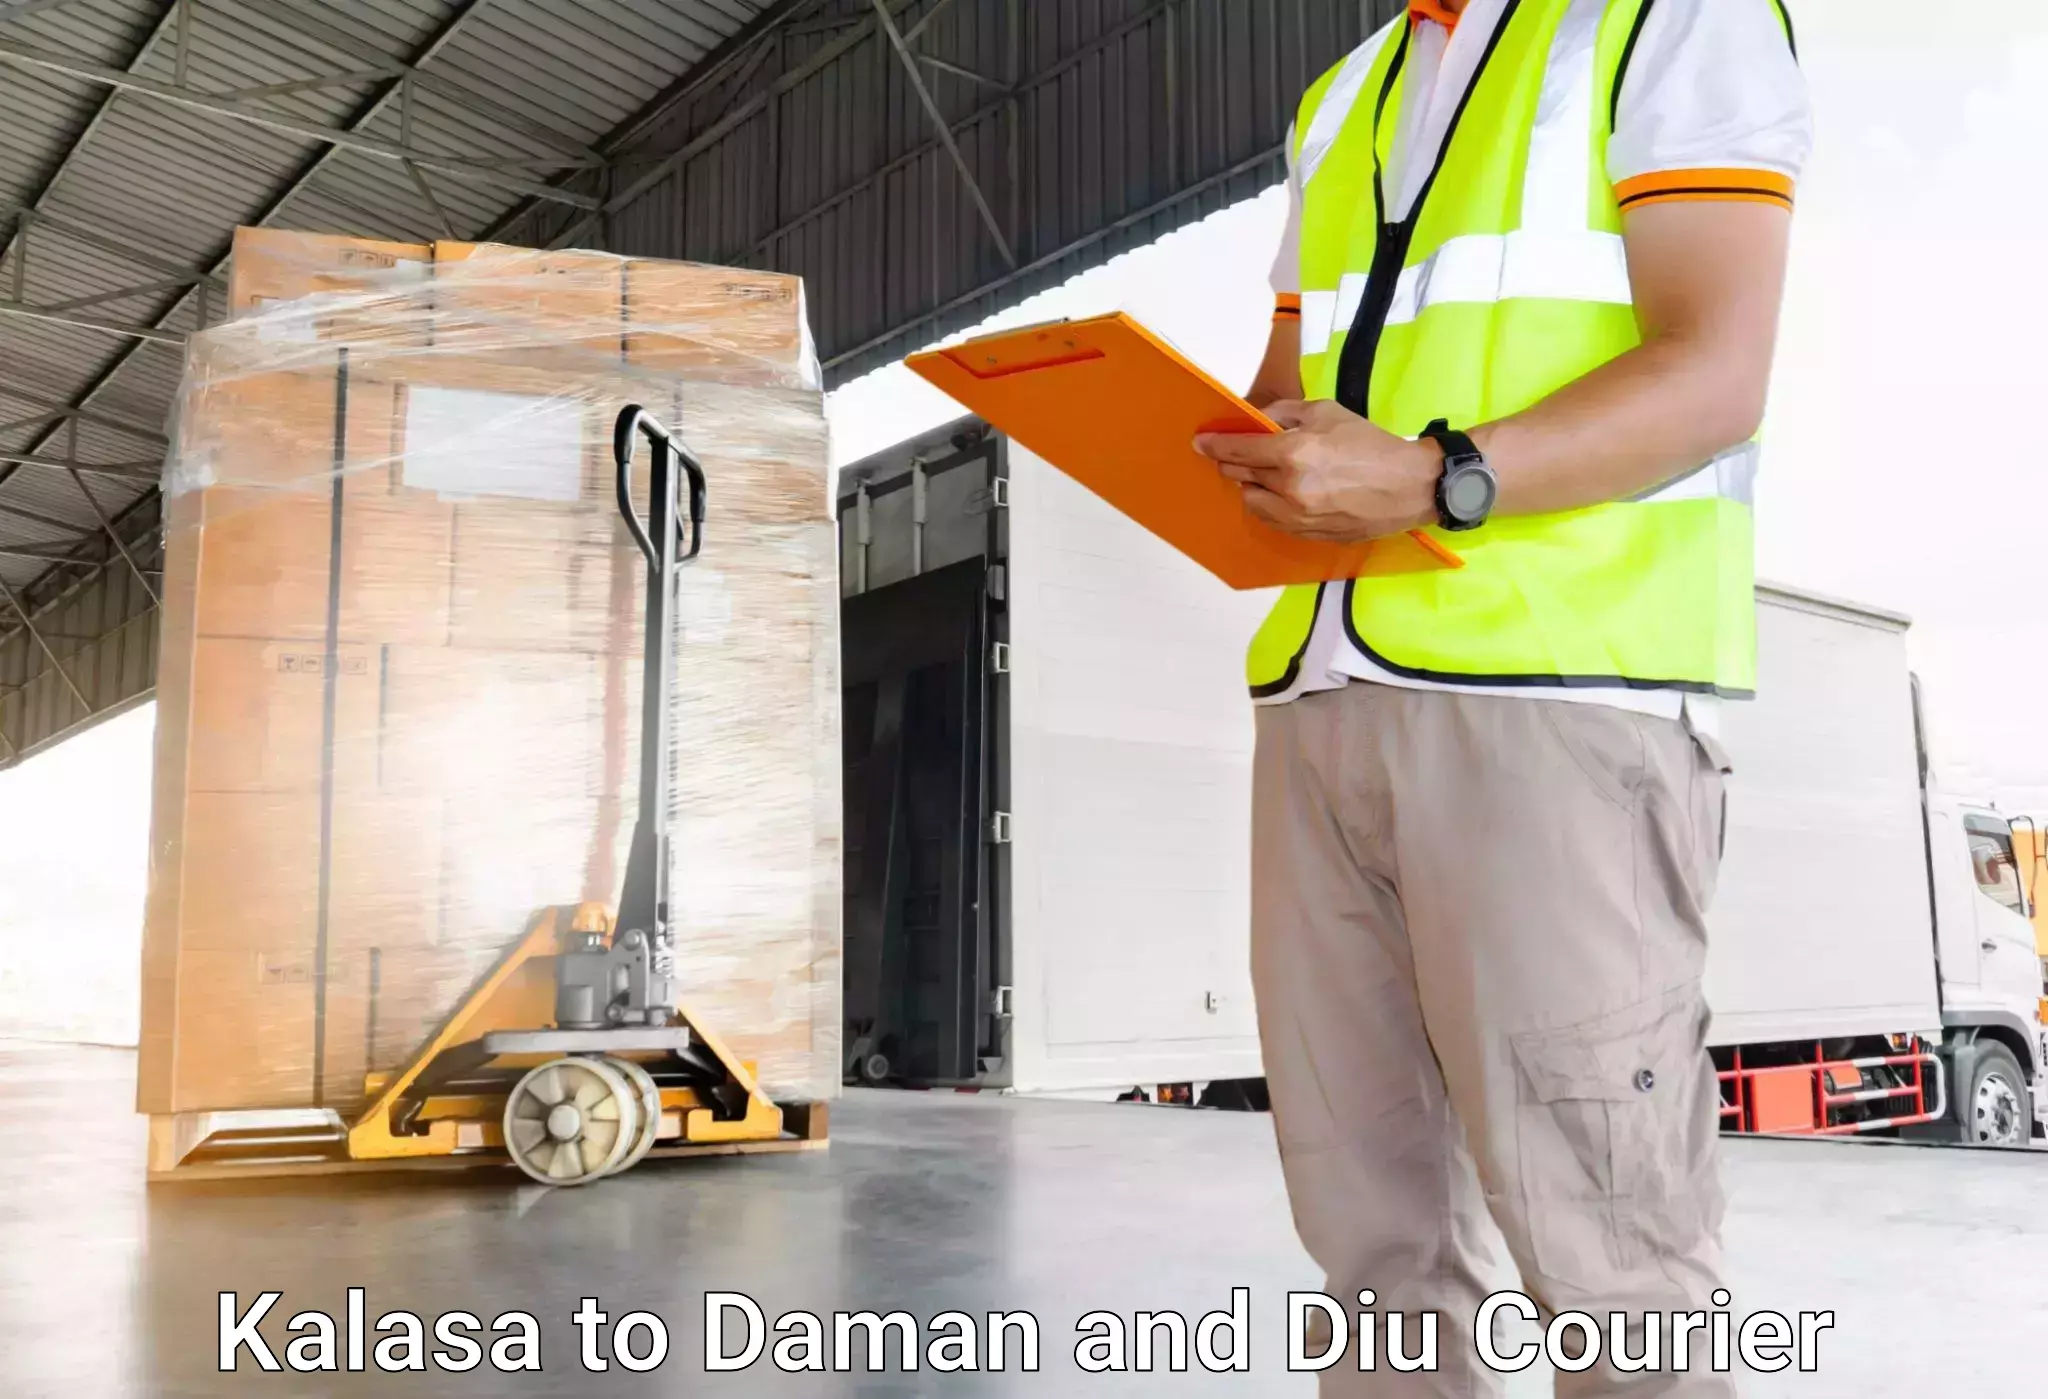 Luggage transport consulting Kalasa to Daman